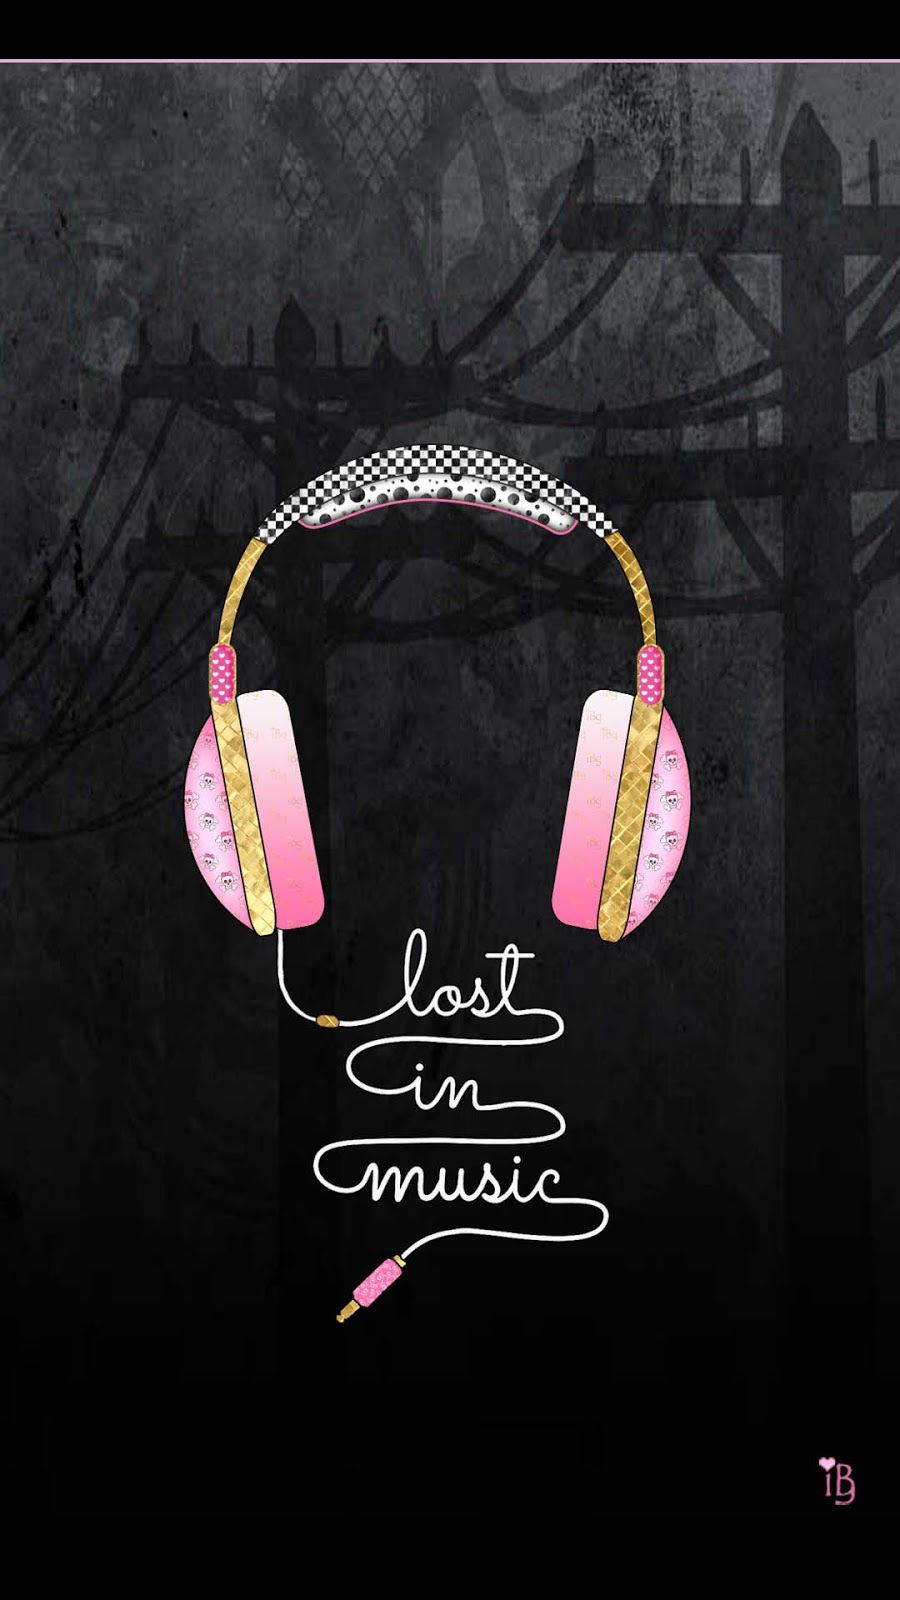 süße musik wallpaper,rosa,kopfhörer,audiogeräte,text,ohr